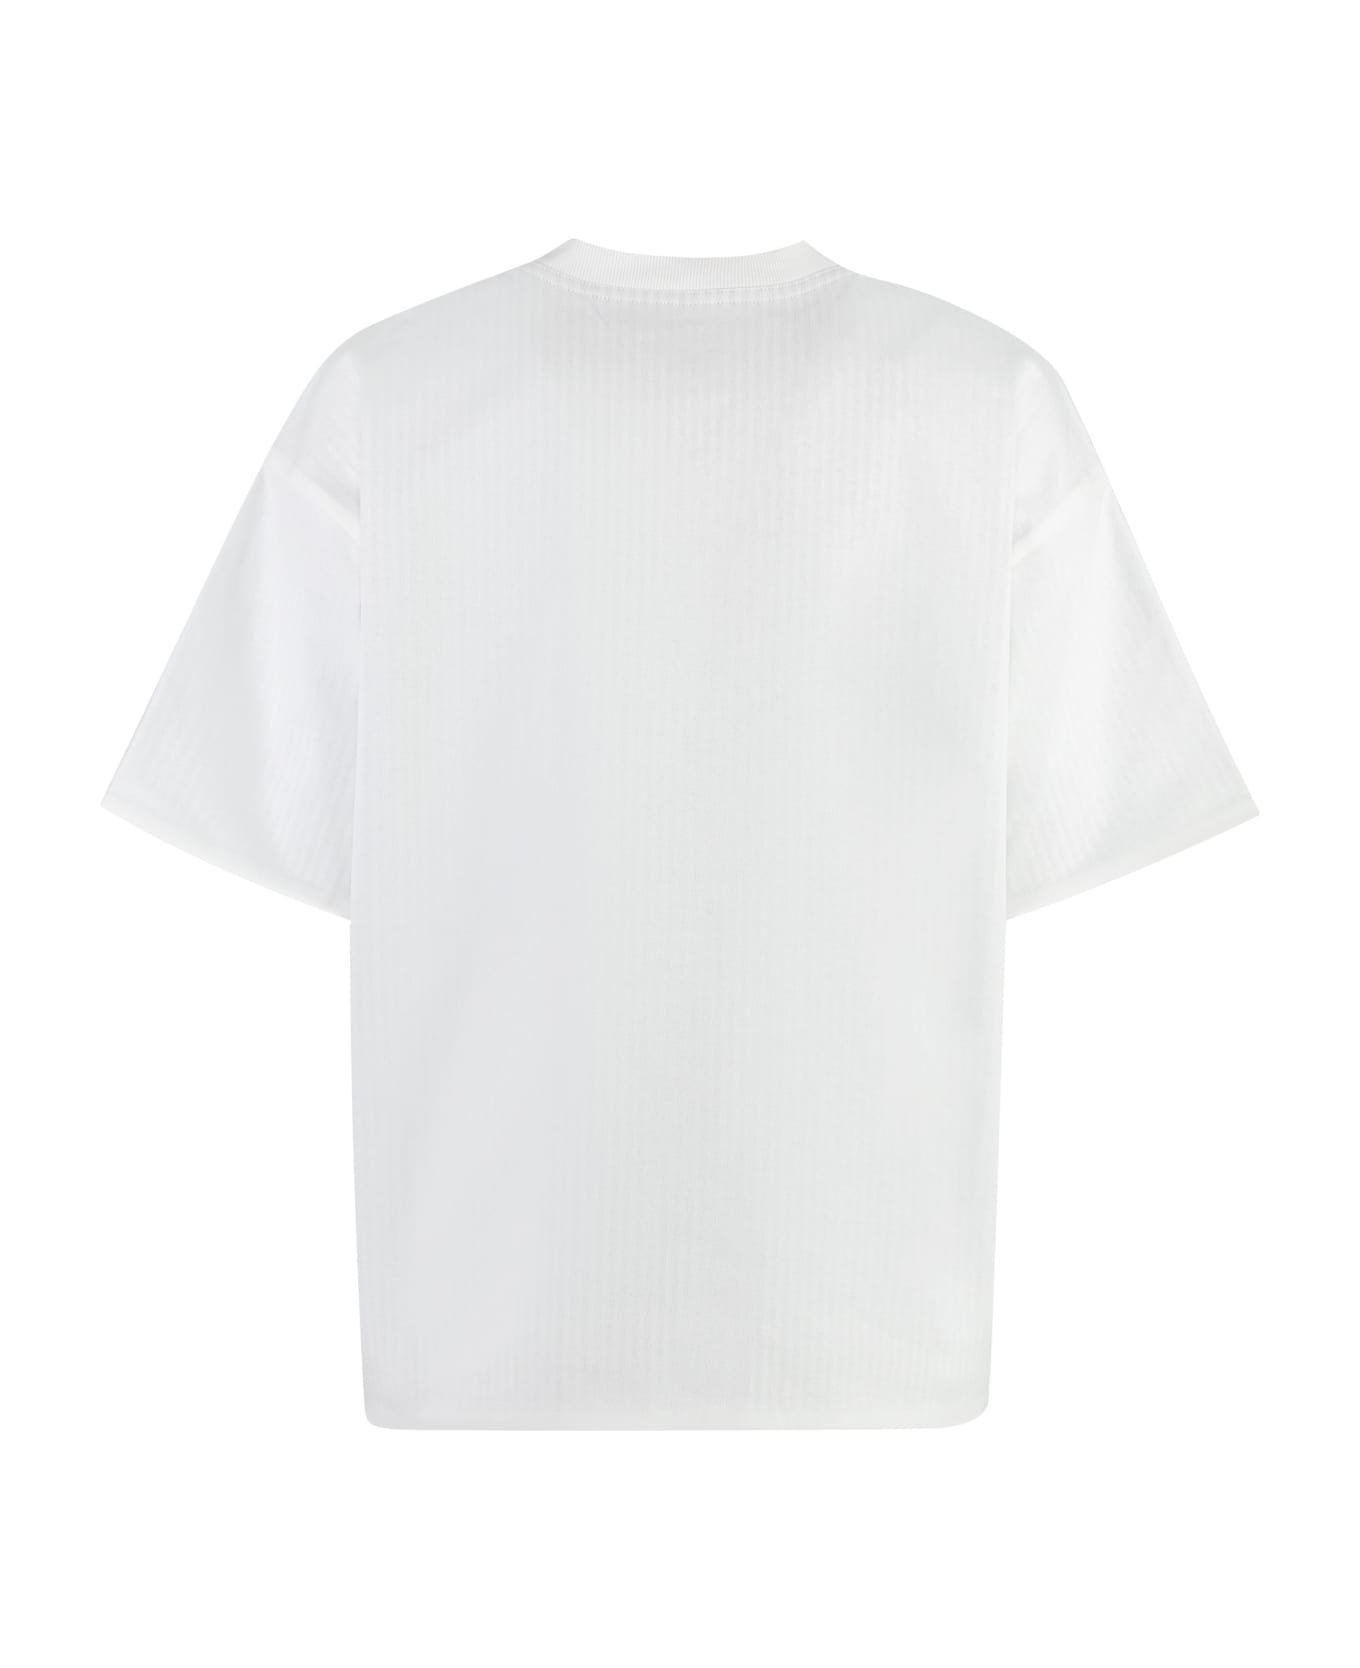 Bottega Veneta Cotton Crew-neck T-shirt - White Tシャツ